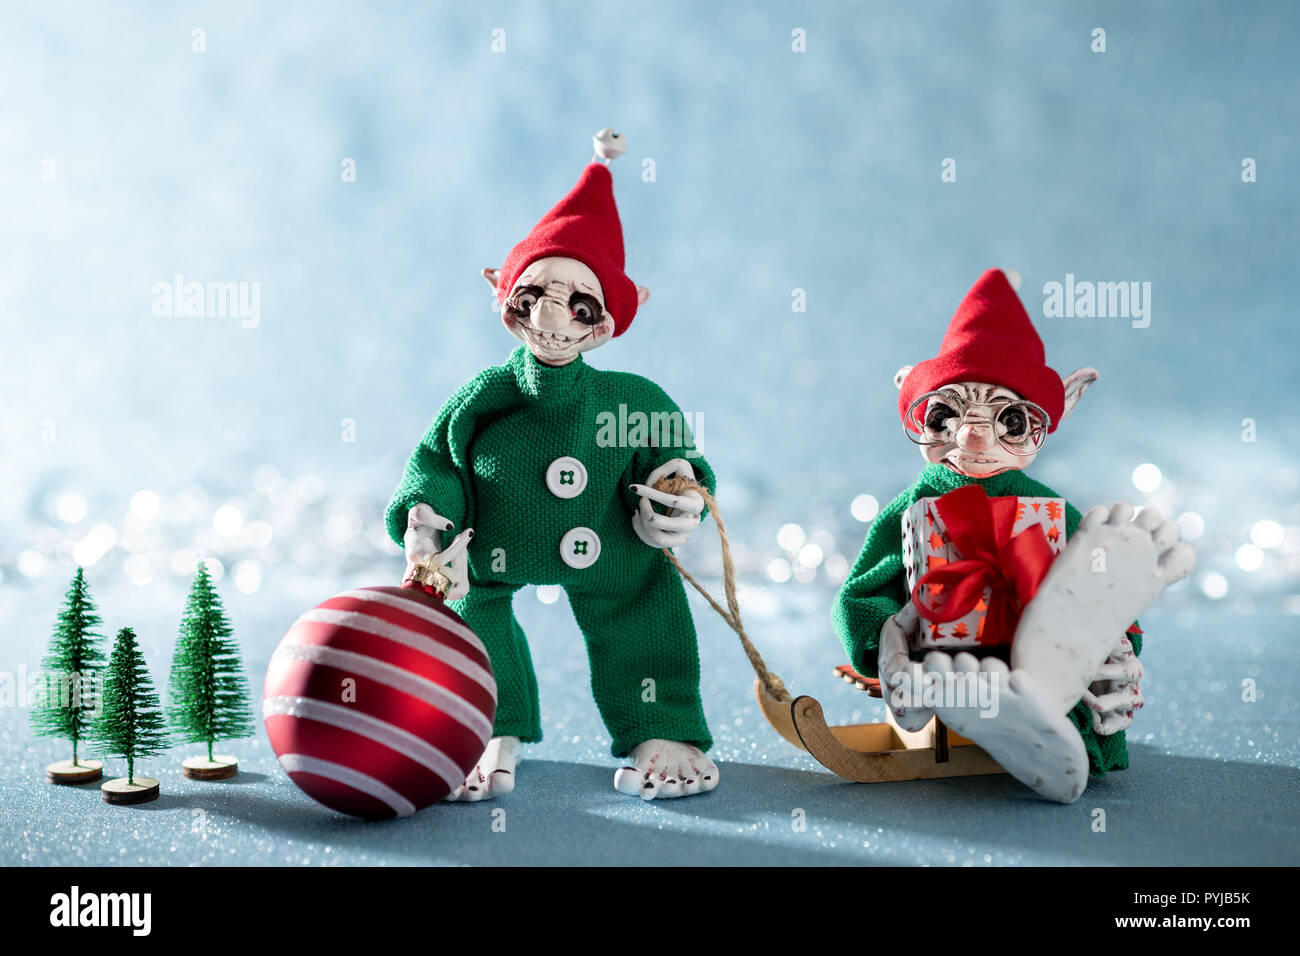 Cute Christmas Elves Working